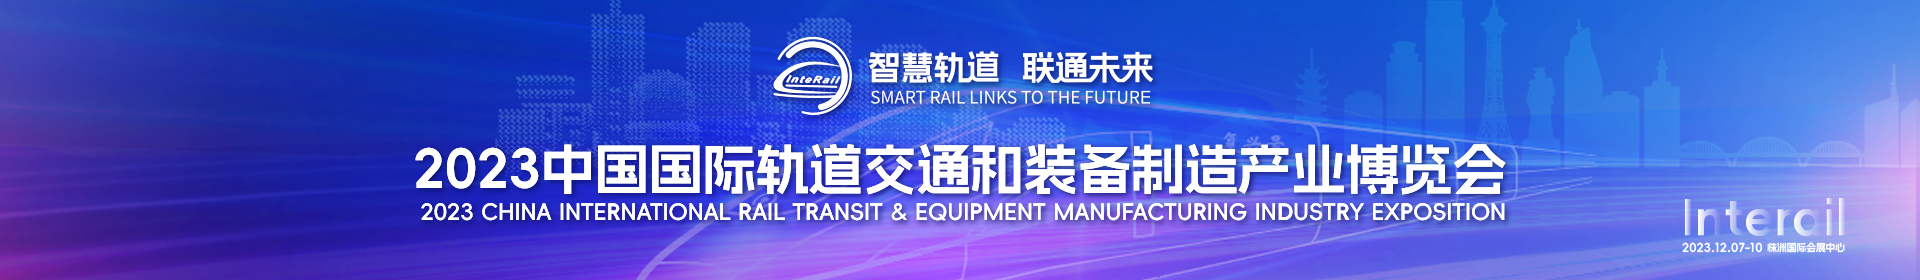 聚焦第三届中国国际轨道交通和装备制造产业博览会